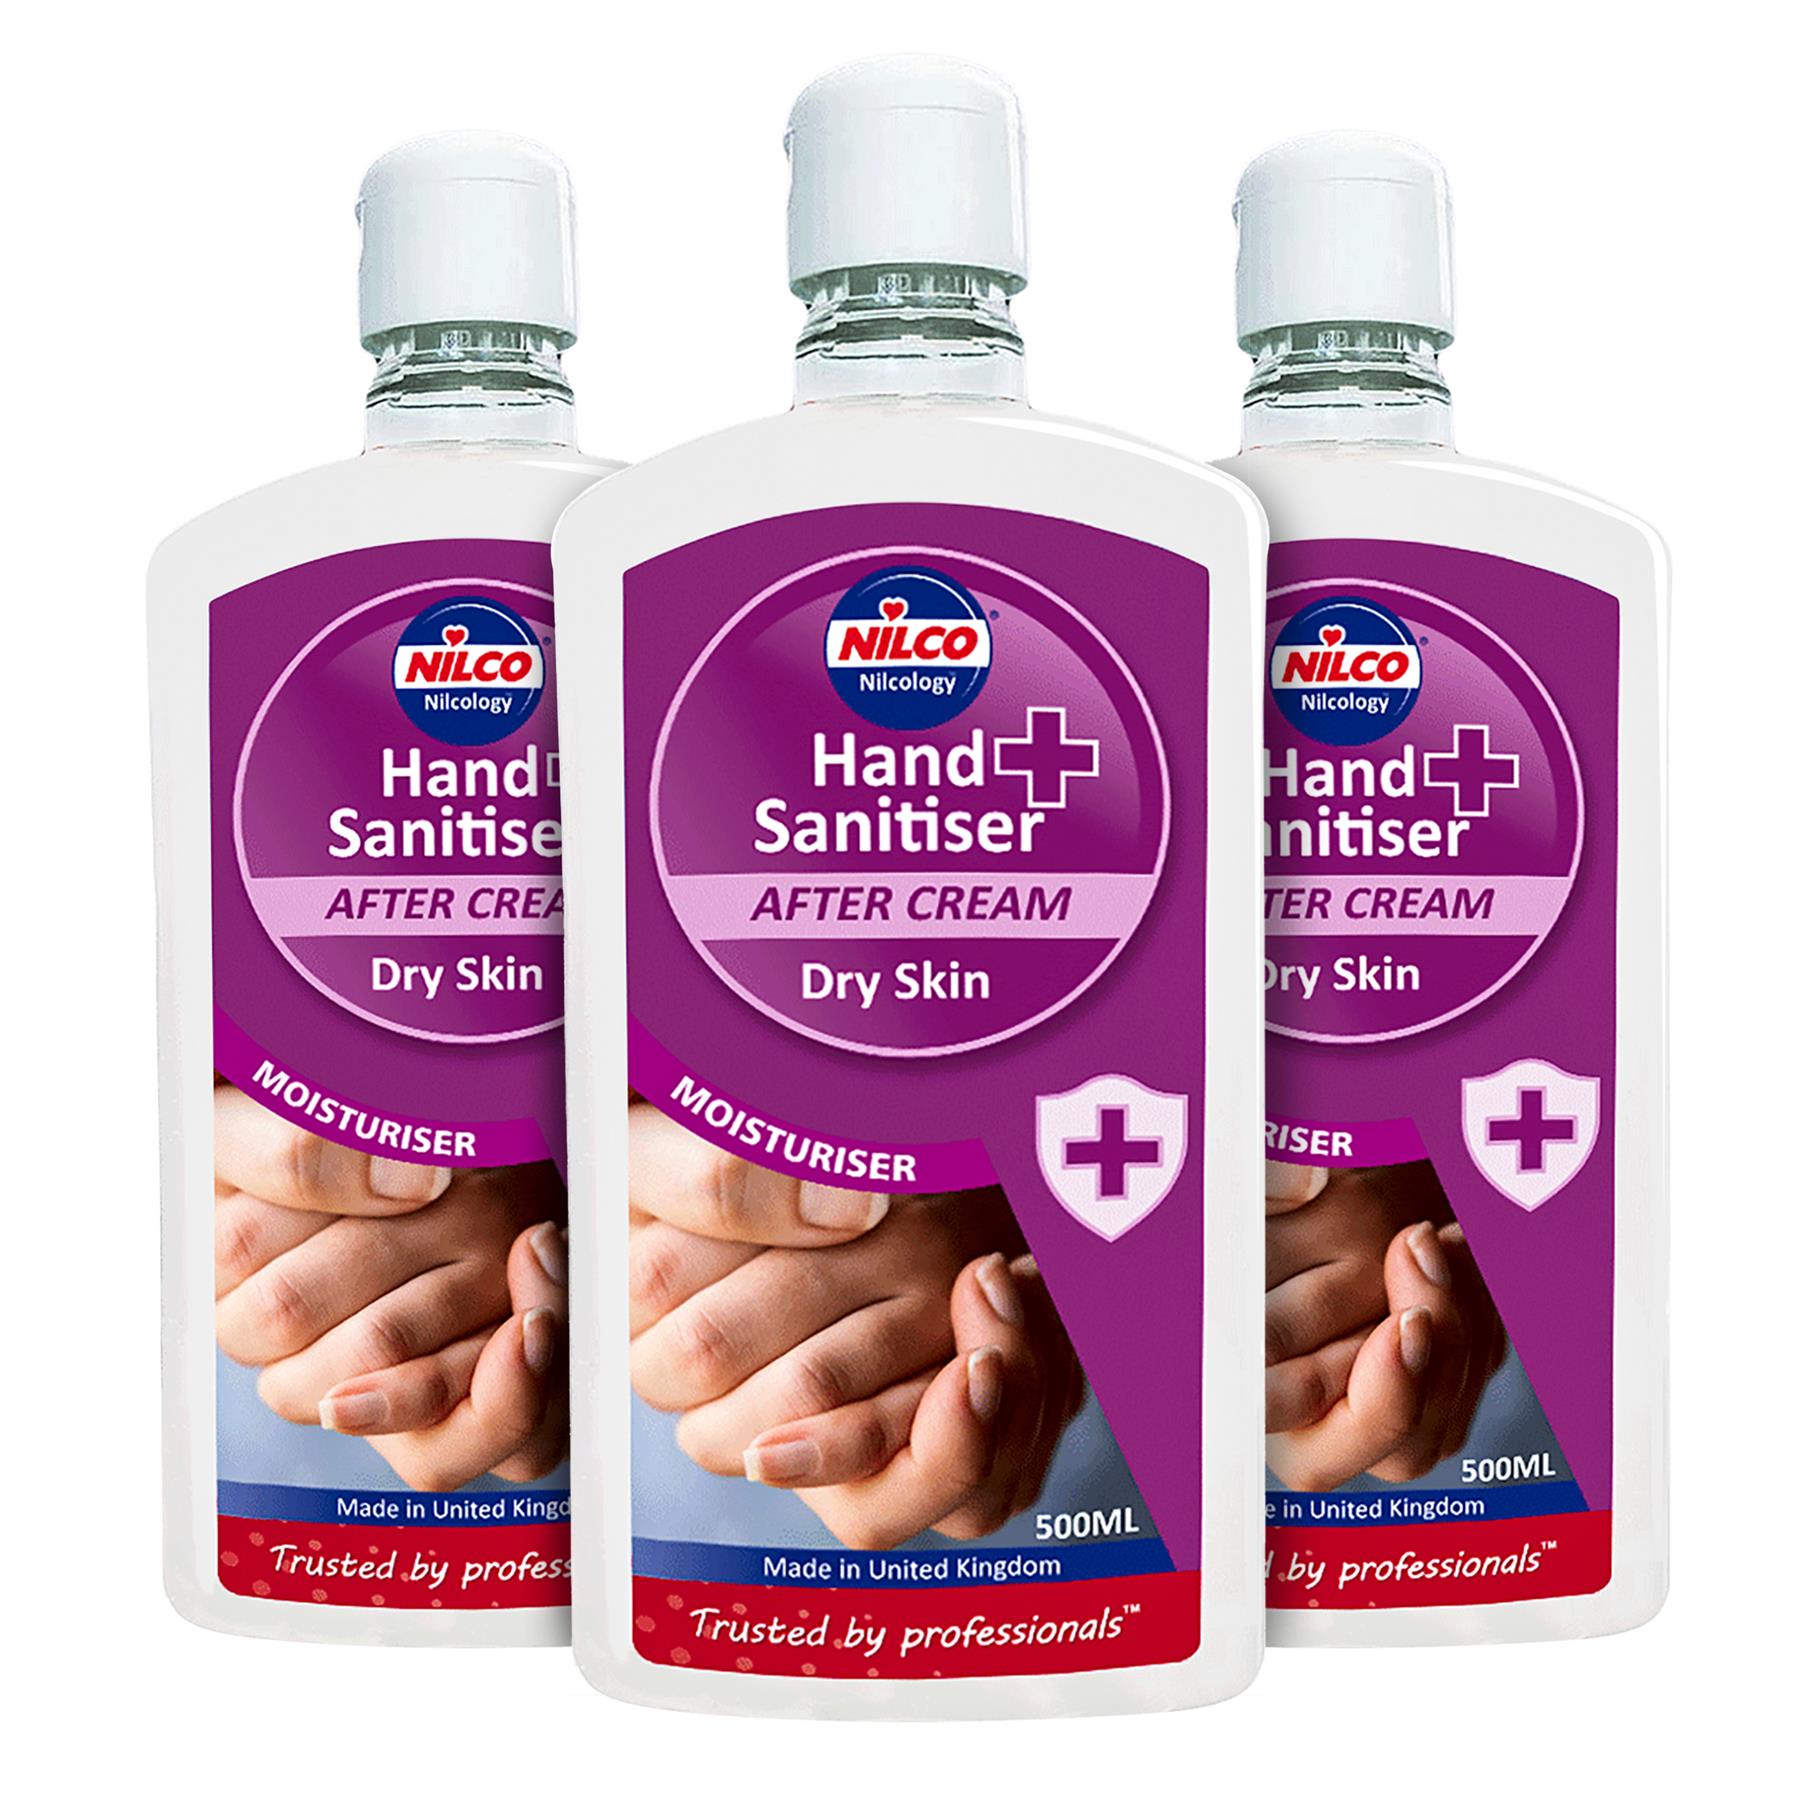 Nilco Hand Sanitiser After Cream Dry Skin Moisturiser - 500ml Triple Pack